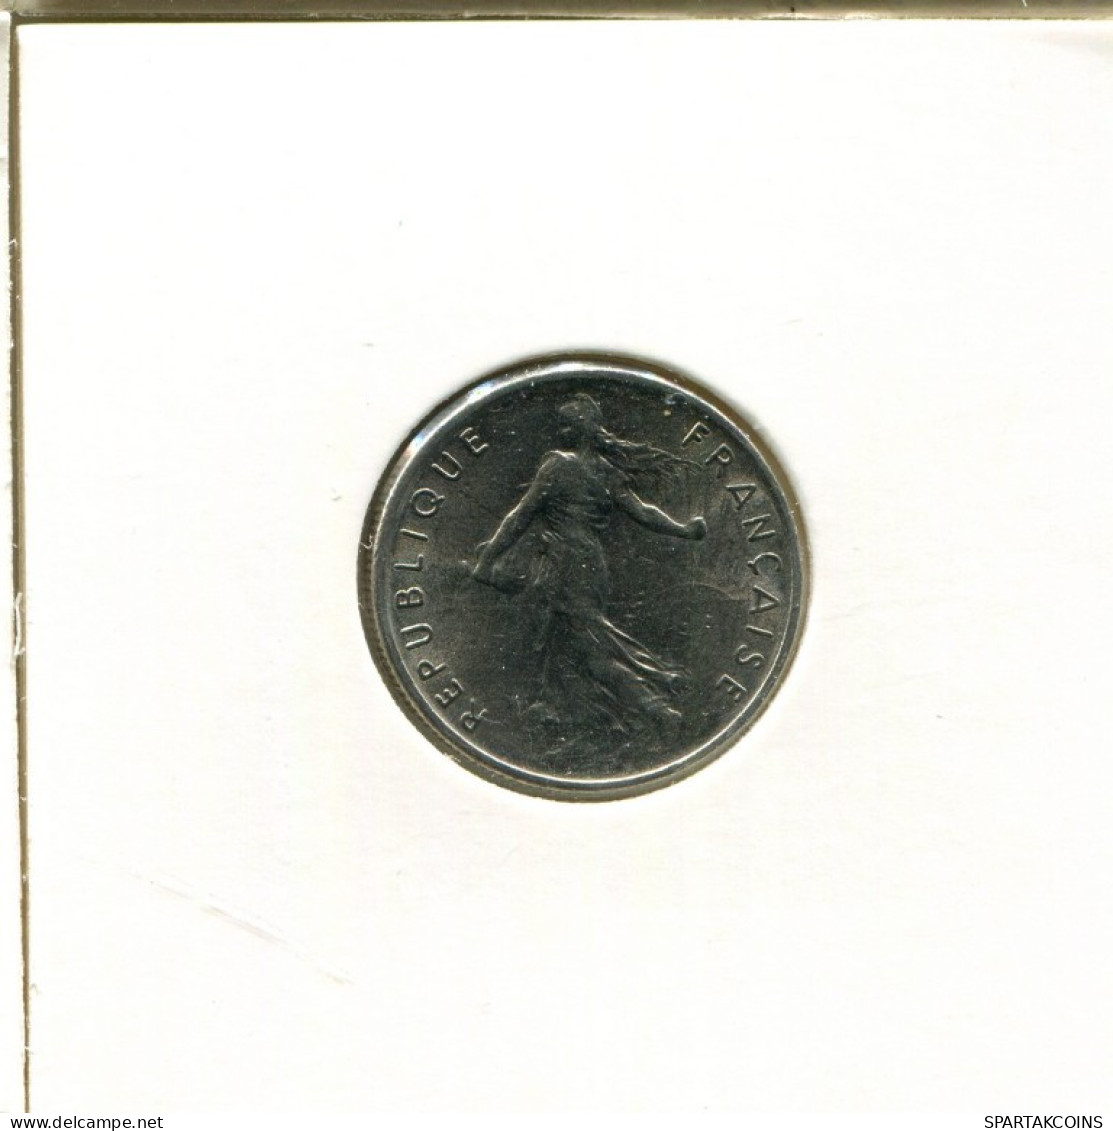 1/2 FRANC 1972 FRANCE Coin French Coin #AK504.U.A - 1/2 Franc